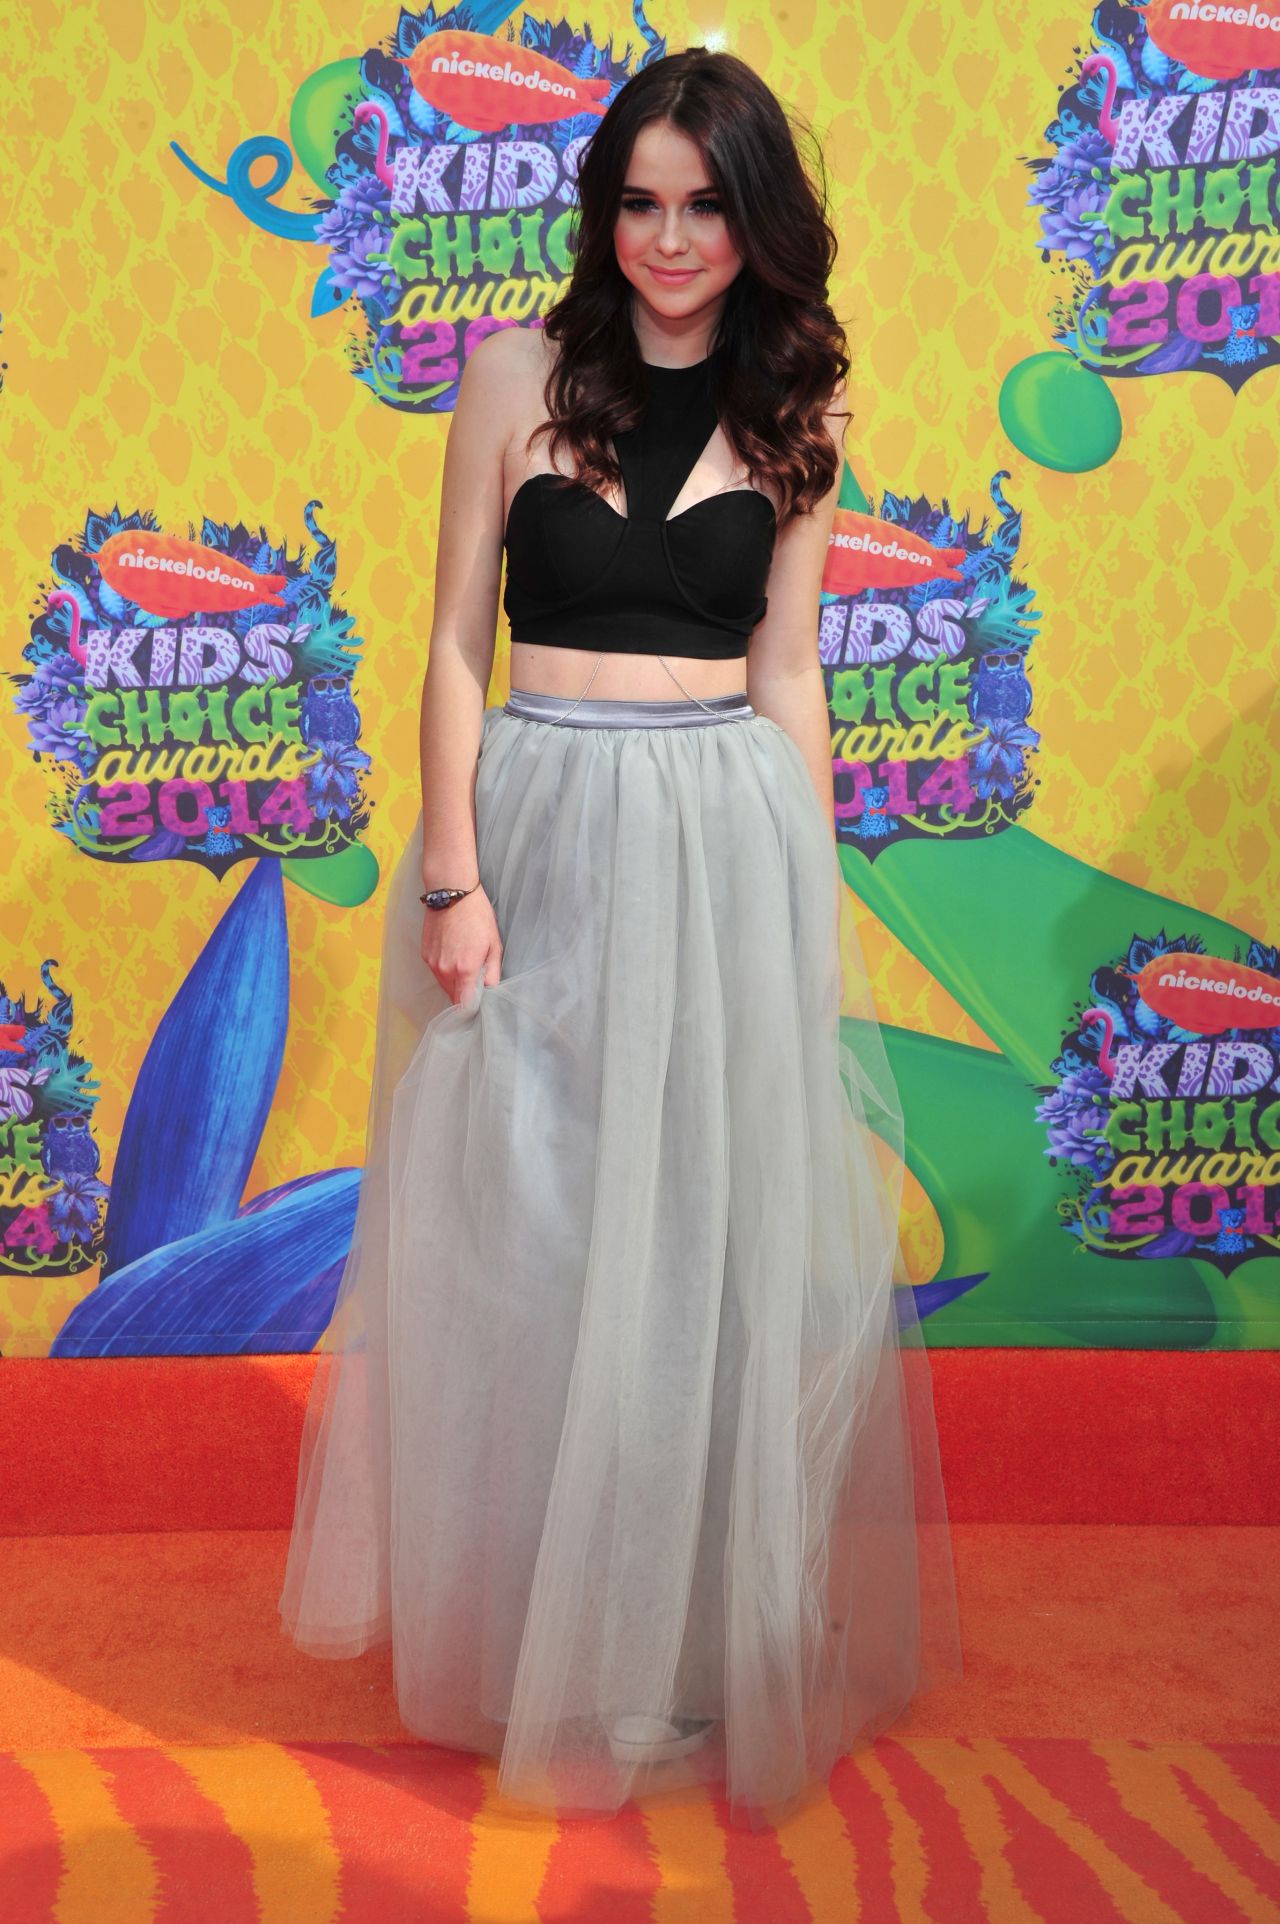 Acacia Brinley - Nickelodeon's Kids' Choice Awards 2014